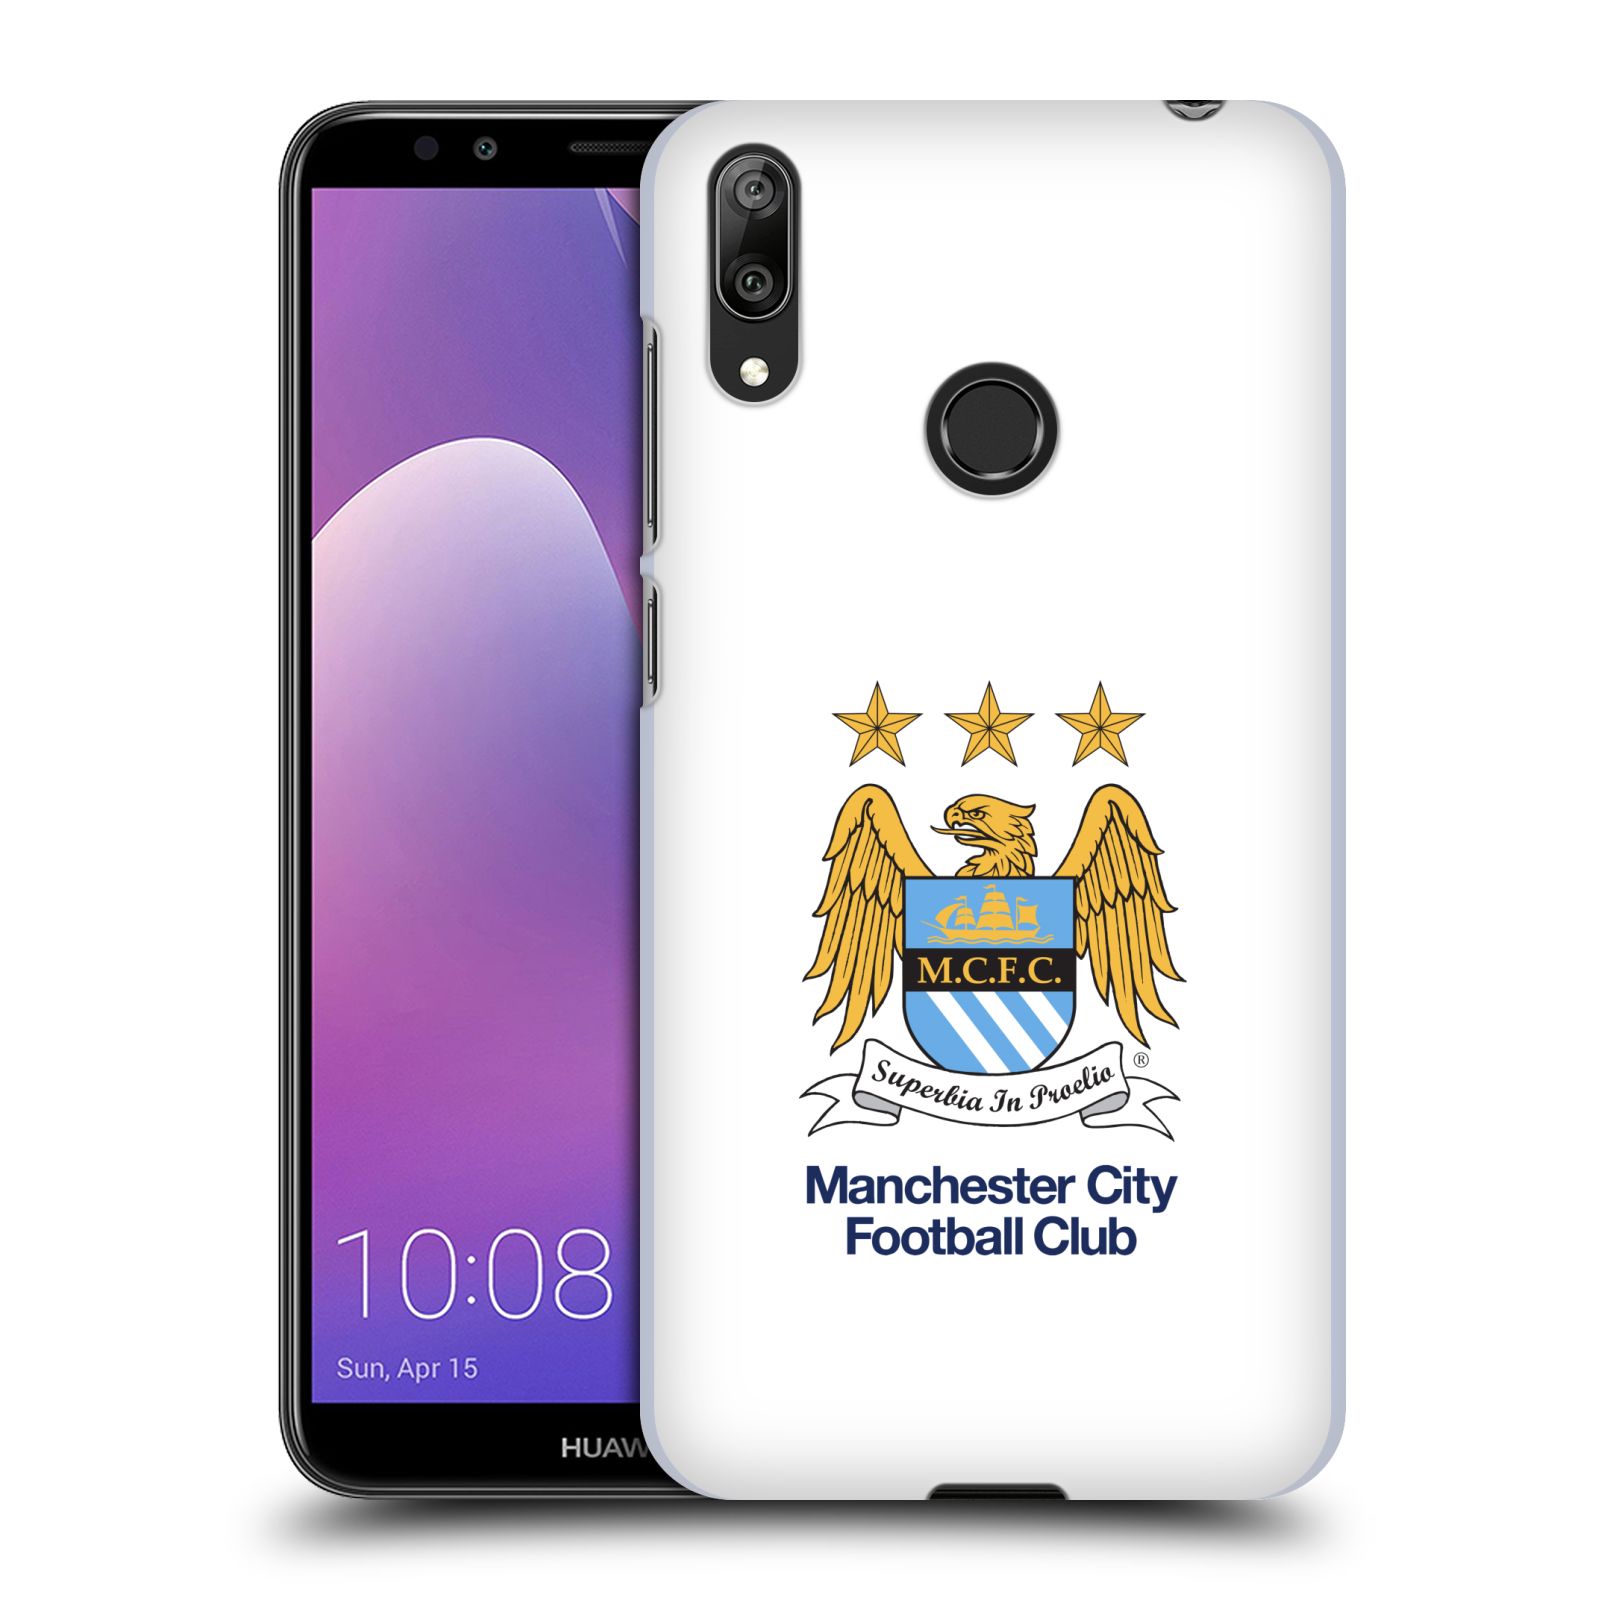 Pouzdro na mobil Huawei Y7 2019 - Head Case - Fotbalový klub Manchester City bílé pozadí velký znak pták